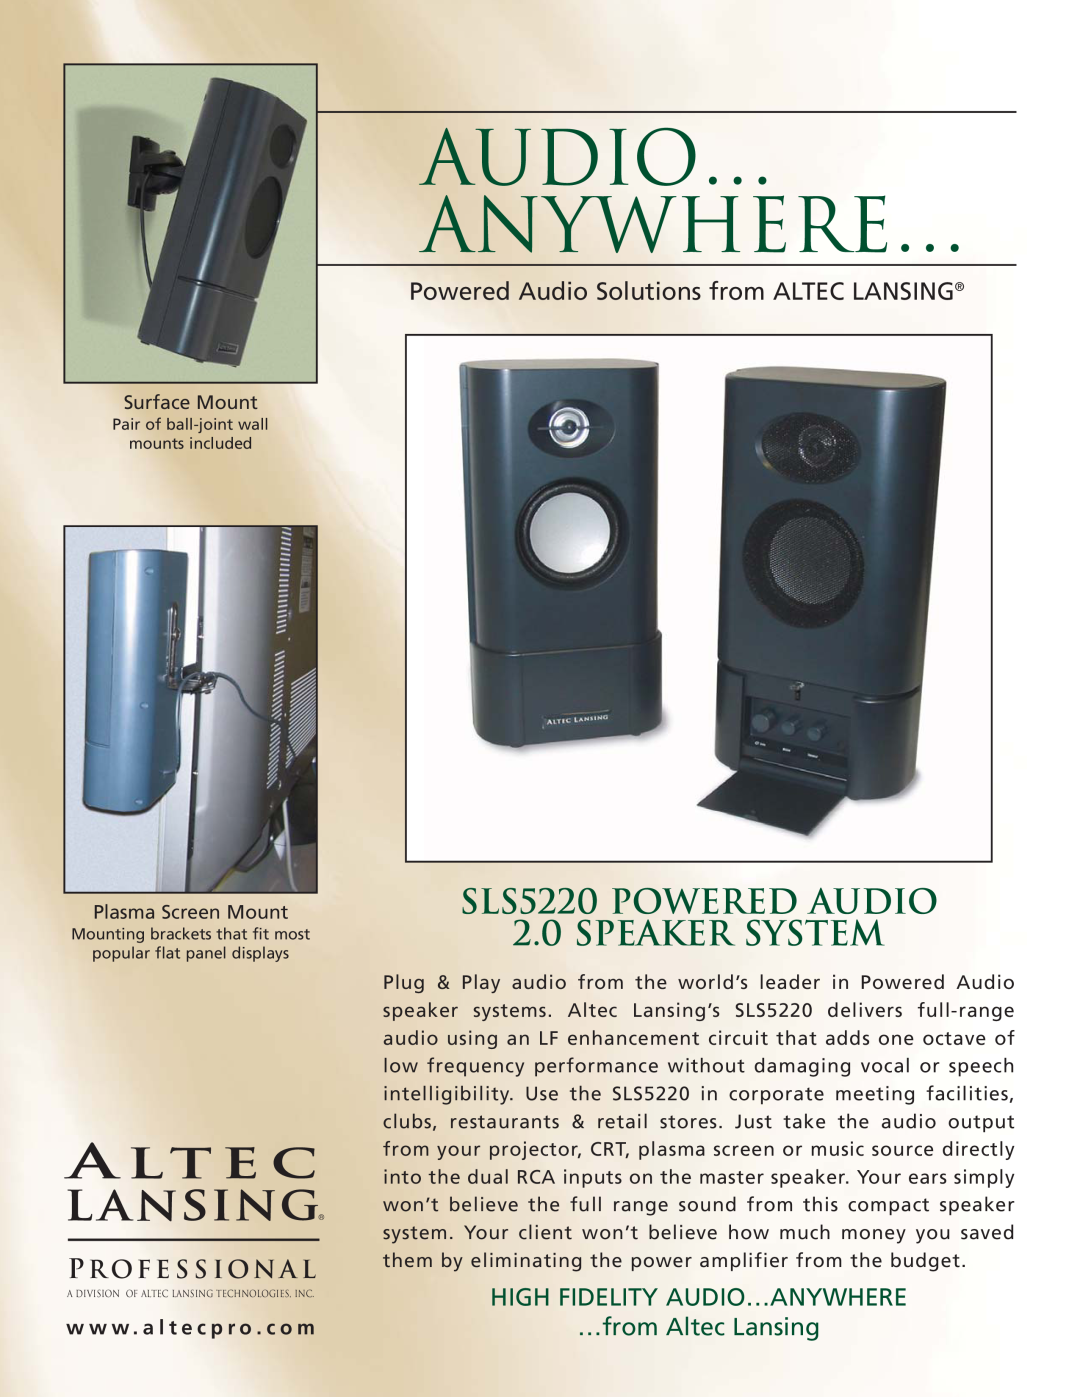 Altec Lansing manual Audio… Anywhere…, SLS5220 POWERED AUDIO 2.0 SPEAKER SYSTEM, P R Ofe S S I O N A L 